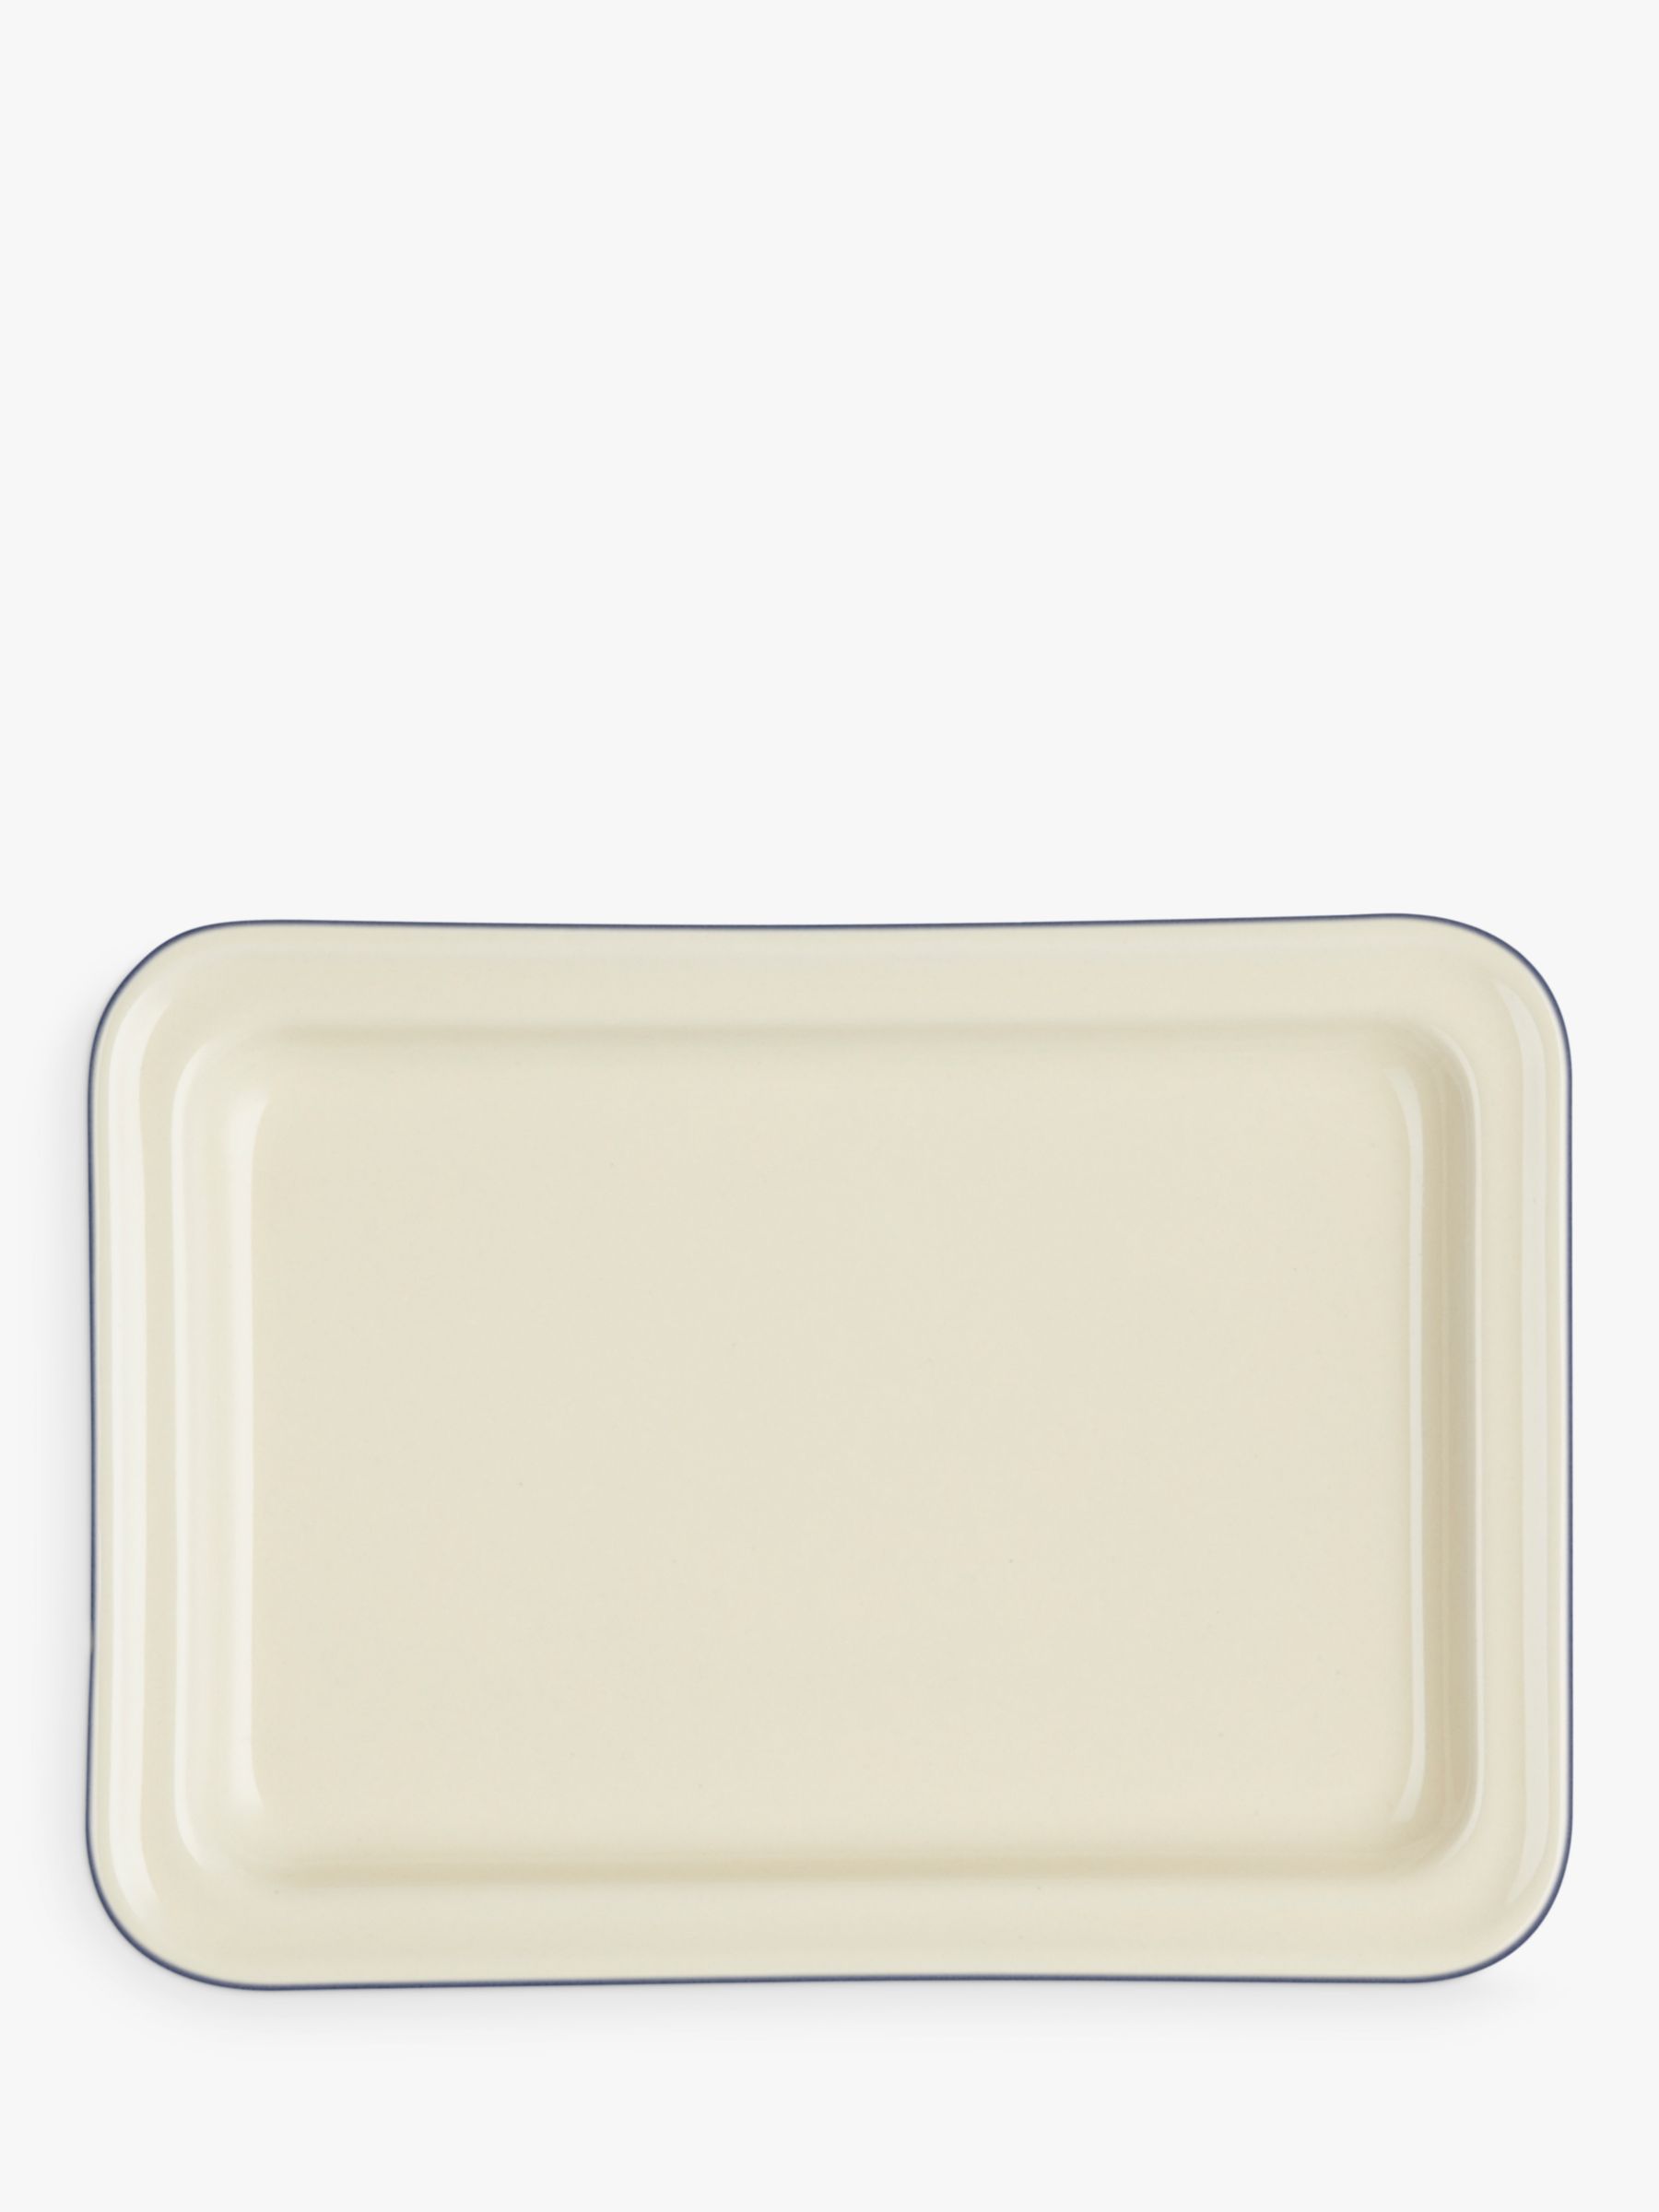 Le Creuset Stoneware Butter Dish, Azure